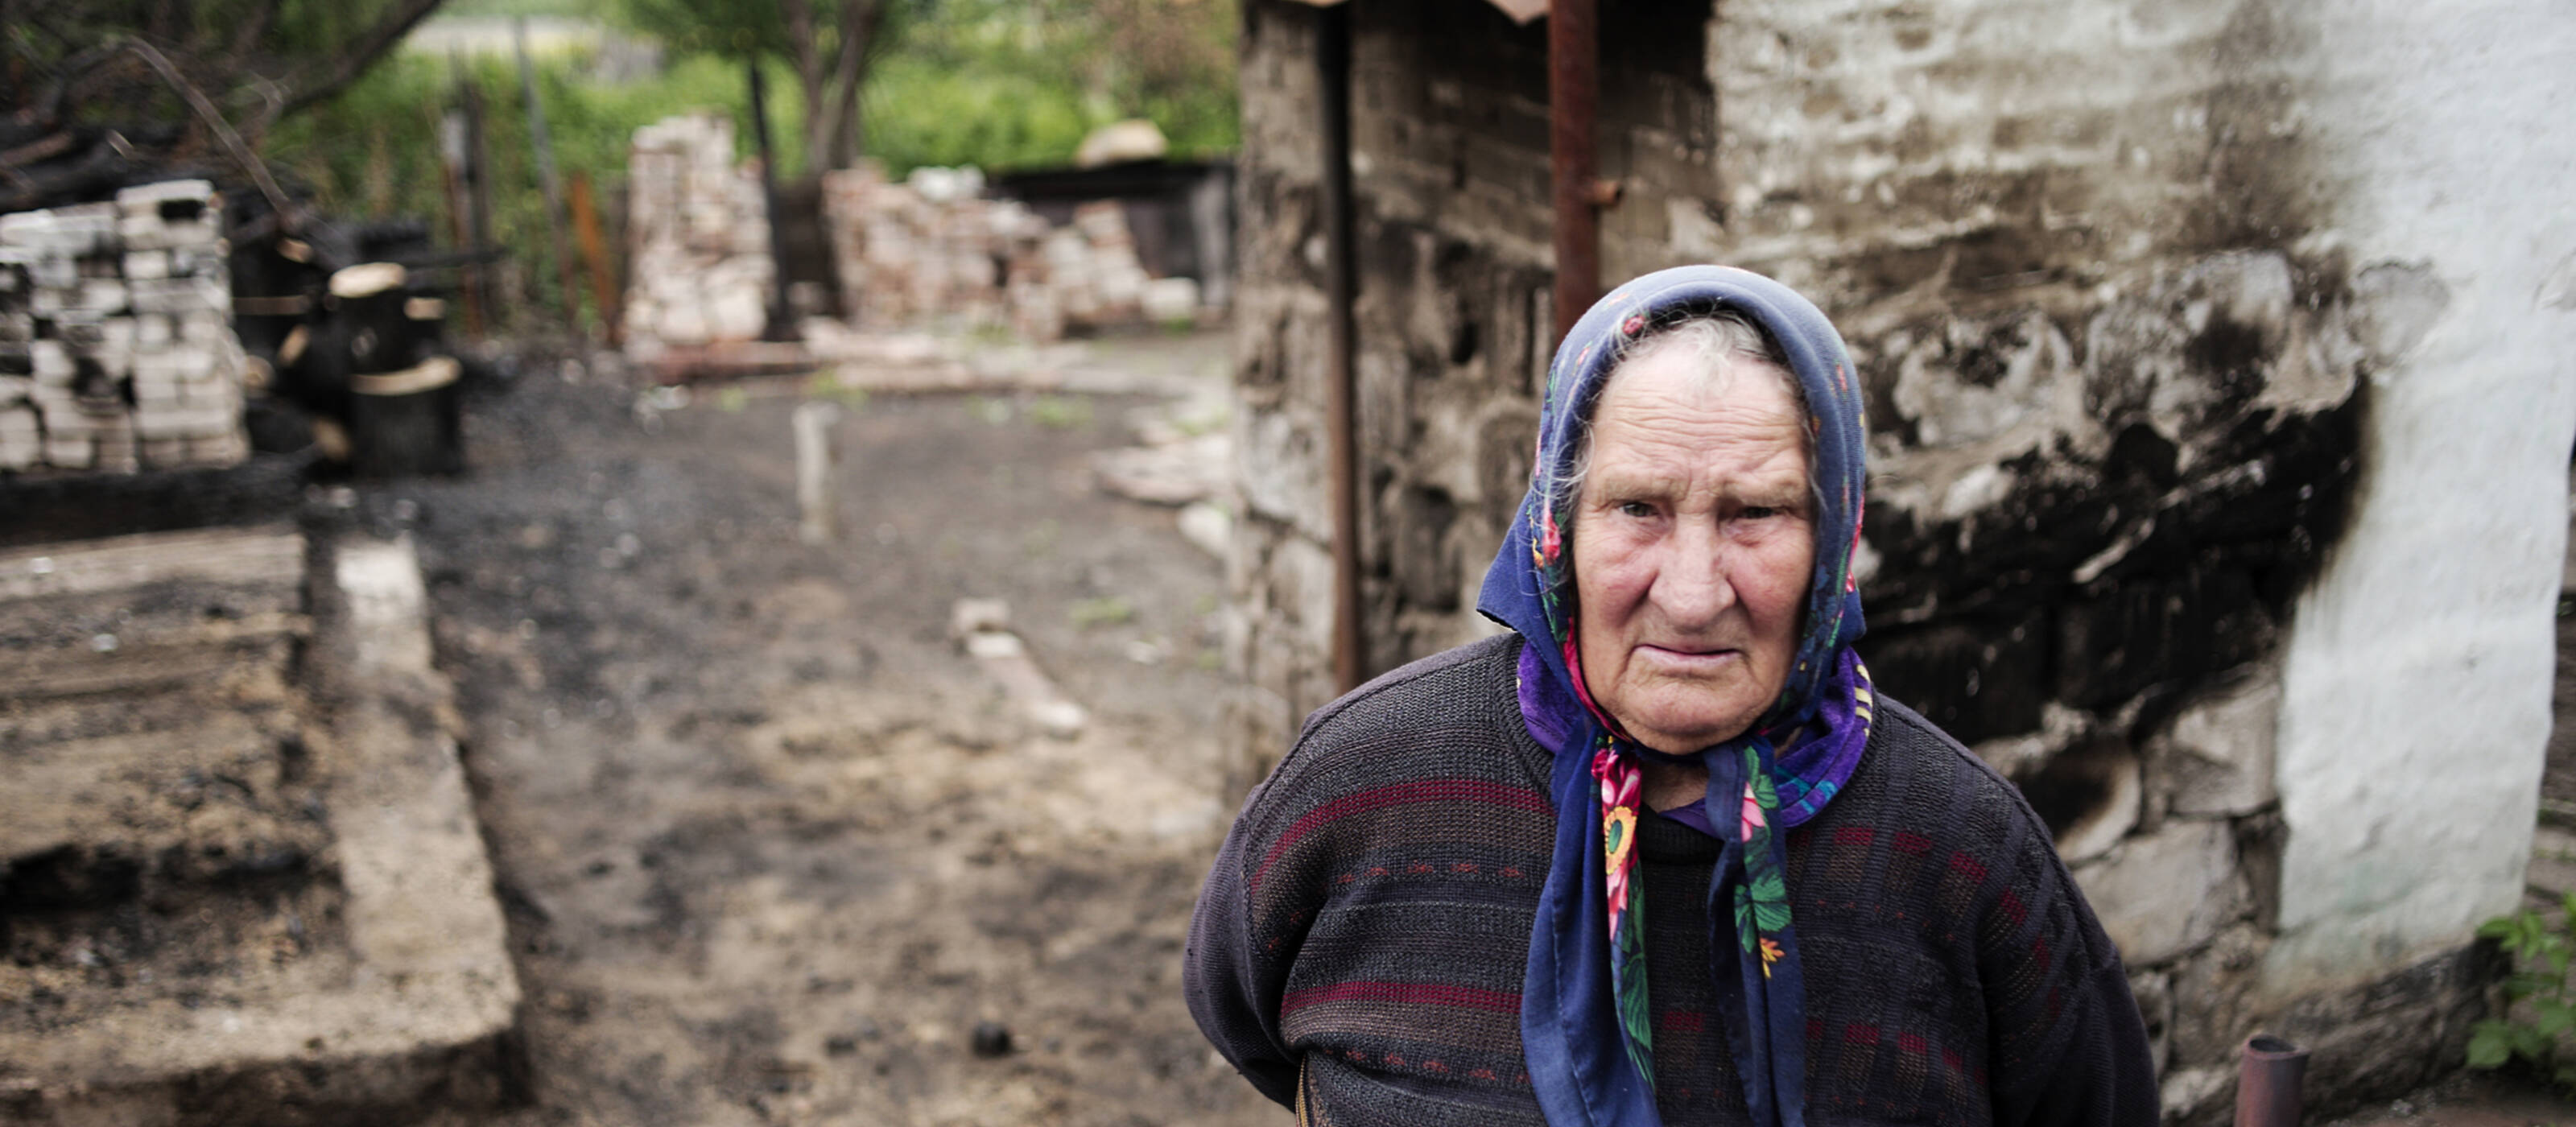 L'Ucraina sta andando verso un disastro umanitario. La Caritas sta fornendo aiuti di emergenza.